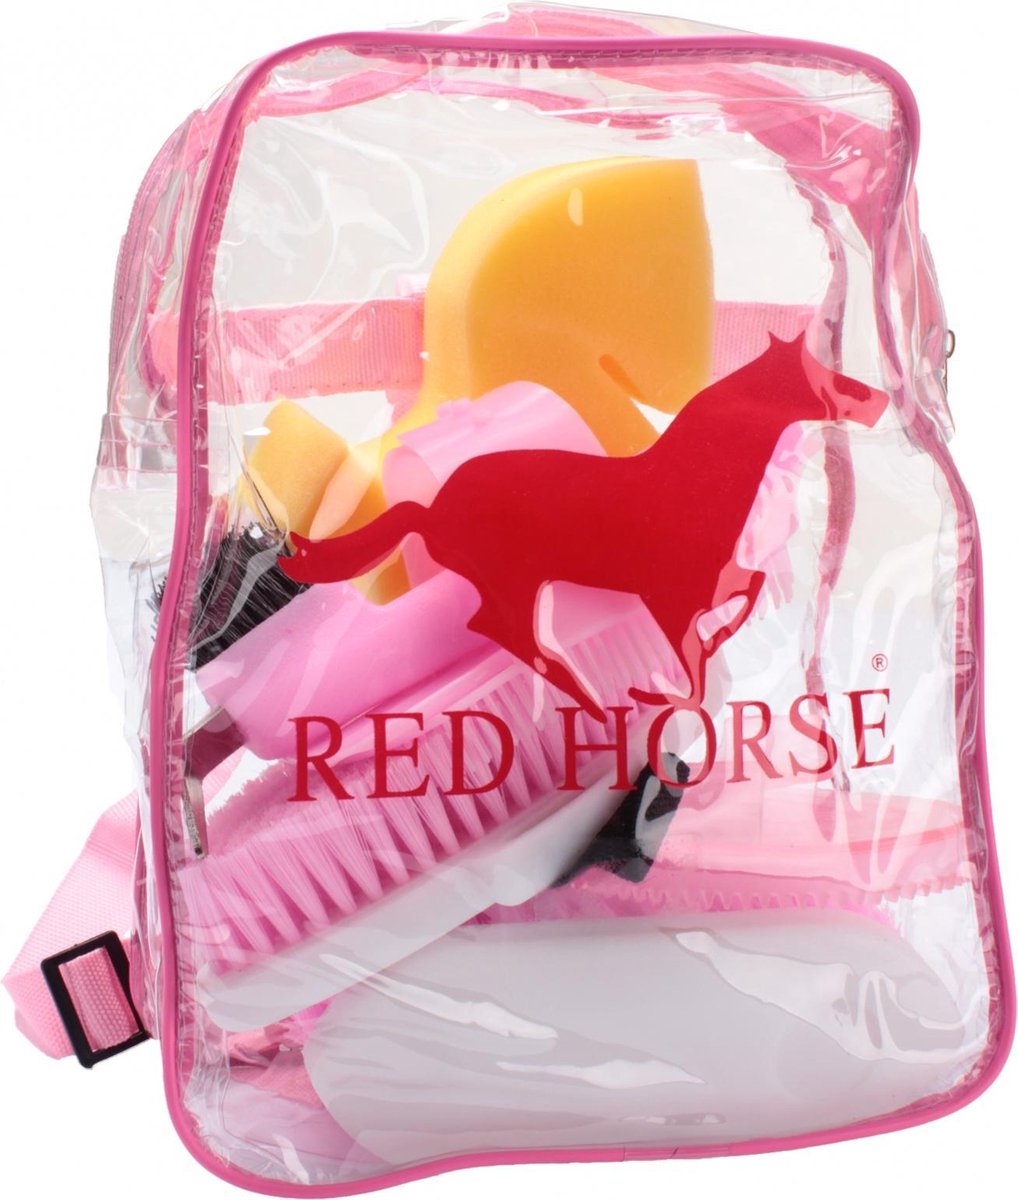 Red Horse Verzorgingsset Voor Paard In Rugzak Hot Pink 8-delig - Red Horse